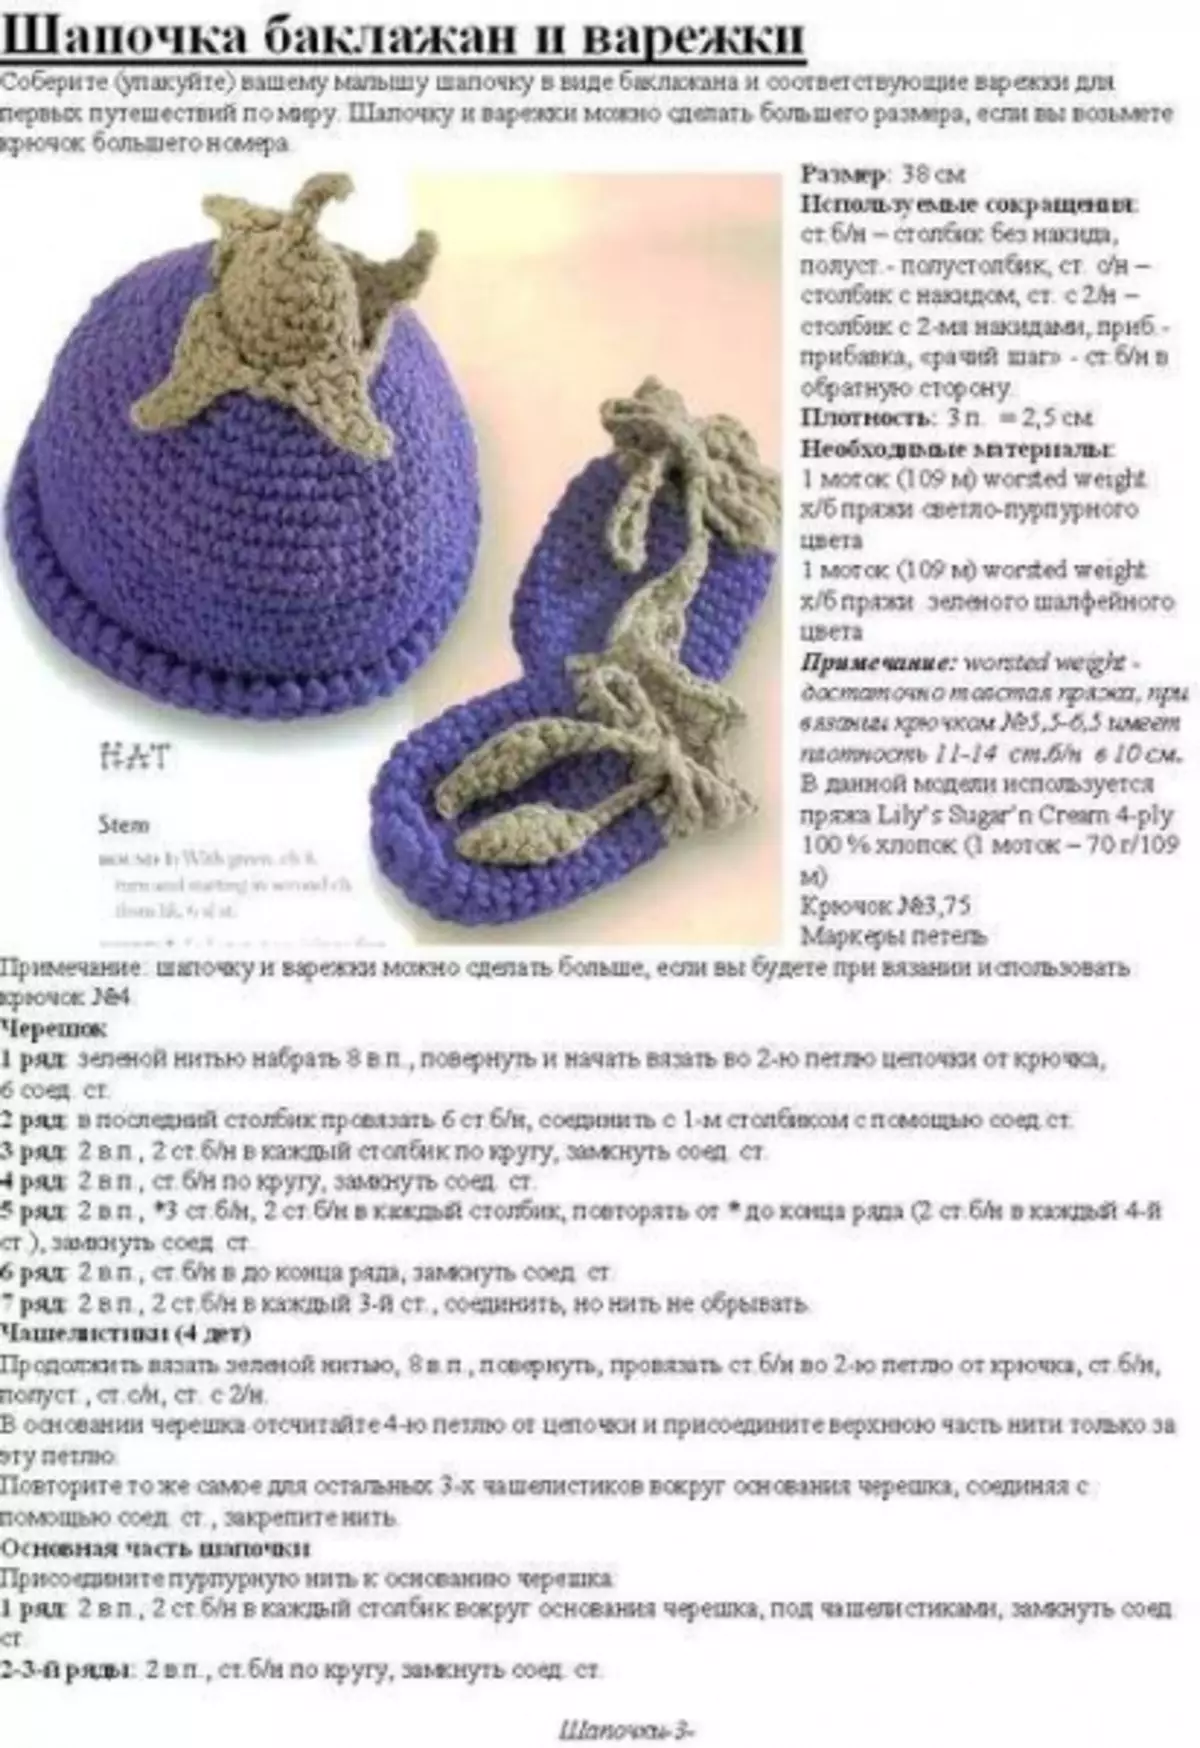 Baby Crochet Cap: зураг, видео бүхий хүүхдэд зориулсан схем ба тайлбарын таг